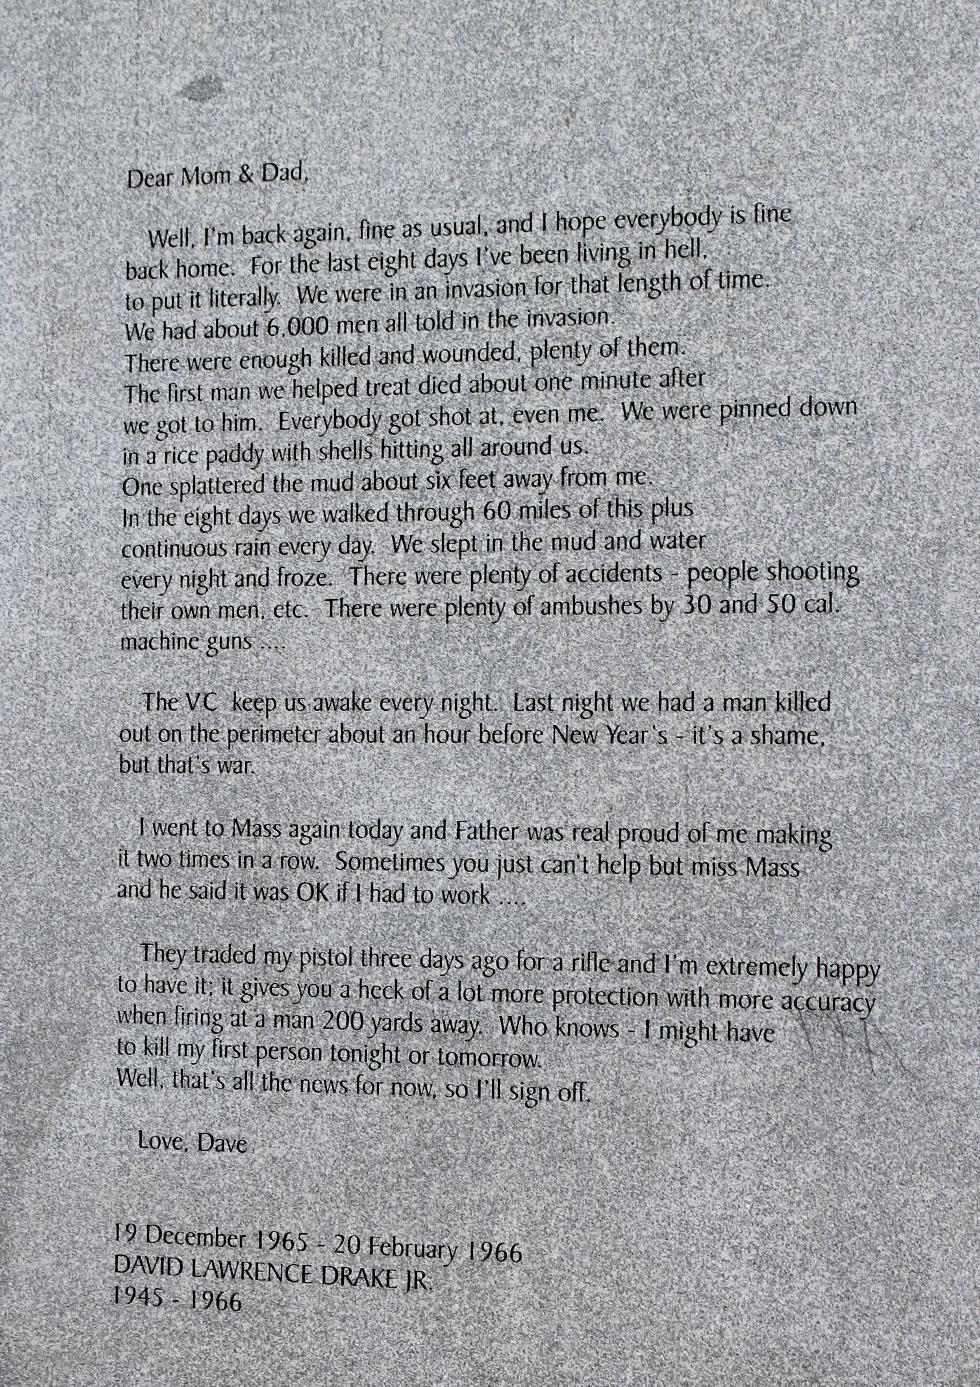 Massachusetts Vietnam Veterans Memorial - Worcester Massachusetts - Letter From David Lawrence Drake Jr